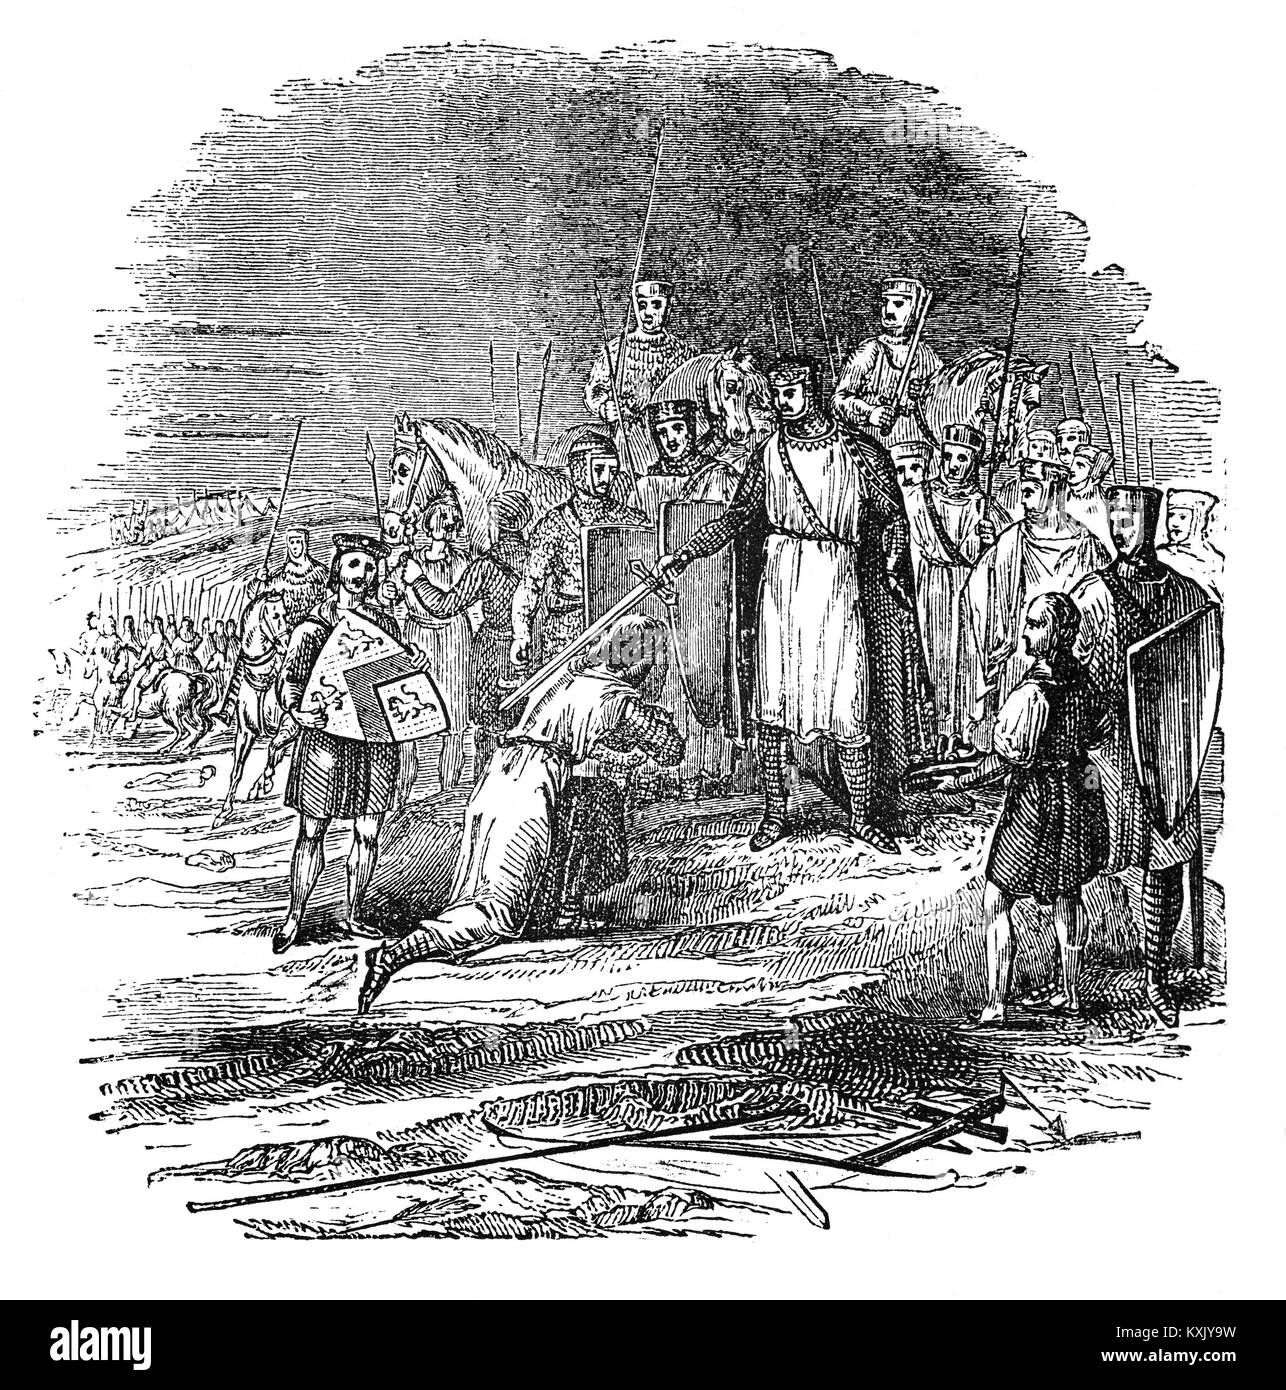 Tapferkeit ist als König Richard I (1157 - 1199), auch bekannt als Richard Coeur de Lion oder Richard Löwenherz Ritter ein Soldat während des Dritten Kreuzzugs (1189 - 1192), auch als die Könige "Kreuzzug bekannt belohnt. Es war der Versuch, von den europäischen Staats- und Regierungschefs, das Heilige Land zu erobern von Saladin (Ṣalāḥ ad-stammeskonföderation Yūsuf ibn Ayyūb). Die Kampagne wurde erfolgreich in der Erfassung der wichtigsten Städte von morgen und Jaffa, und die Umkehrung der meisten Saladin Eroberungen, aber es konnte nicht Jerusalem, die emotionale und spirituelle Motivation der Kreuzzug zu erfassen. Stockfoto